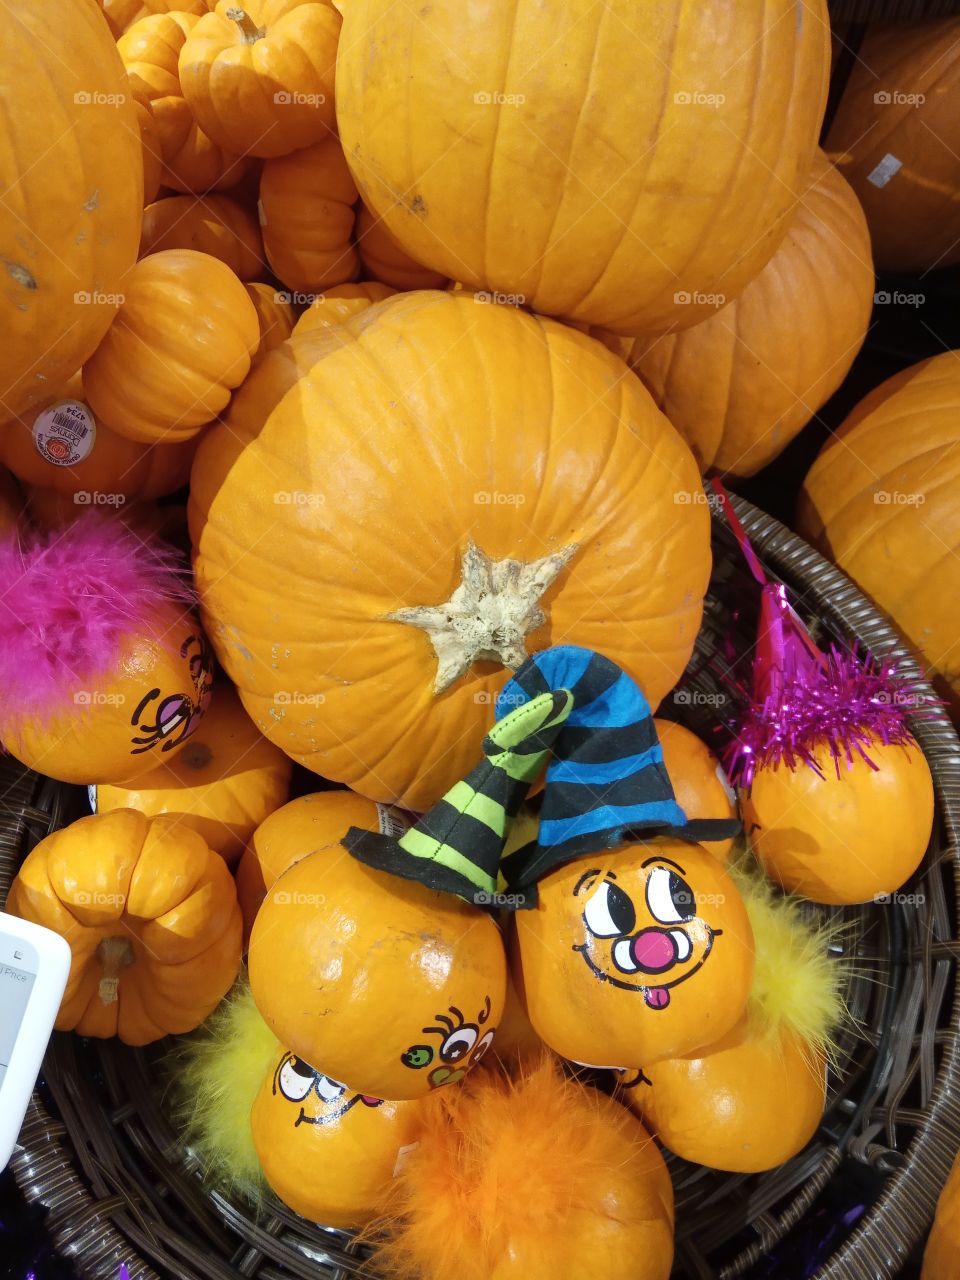 it's a pumpkin season